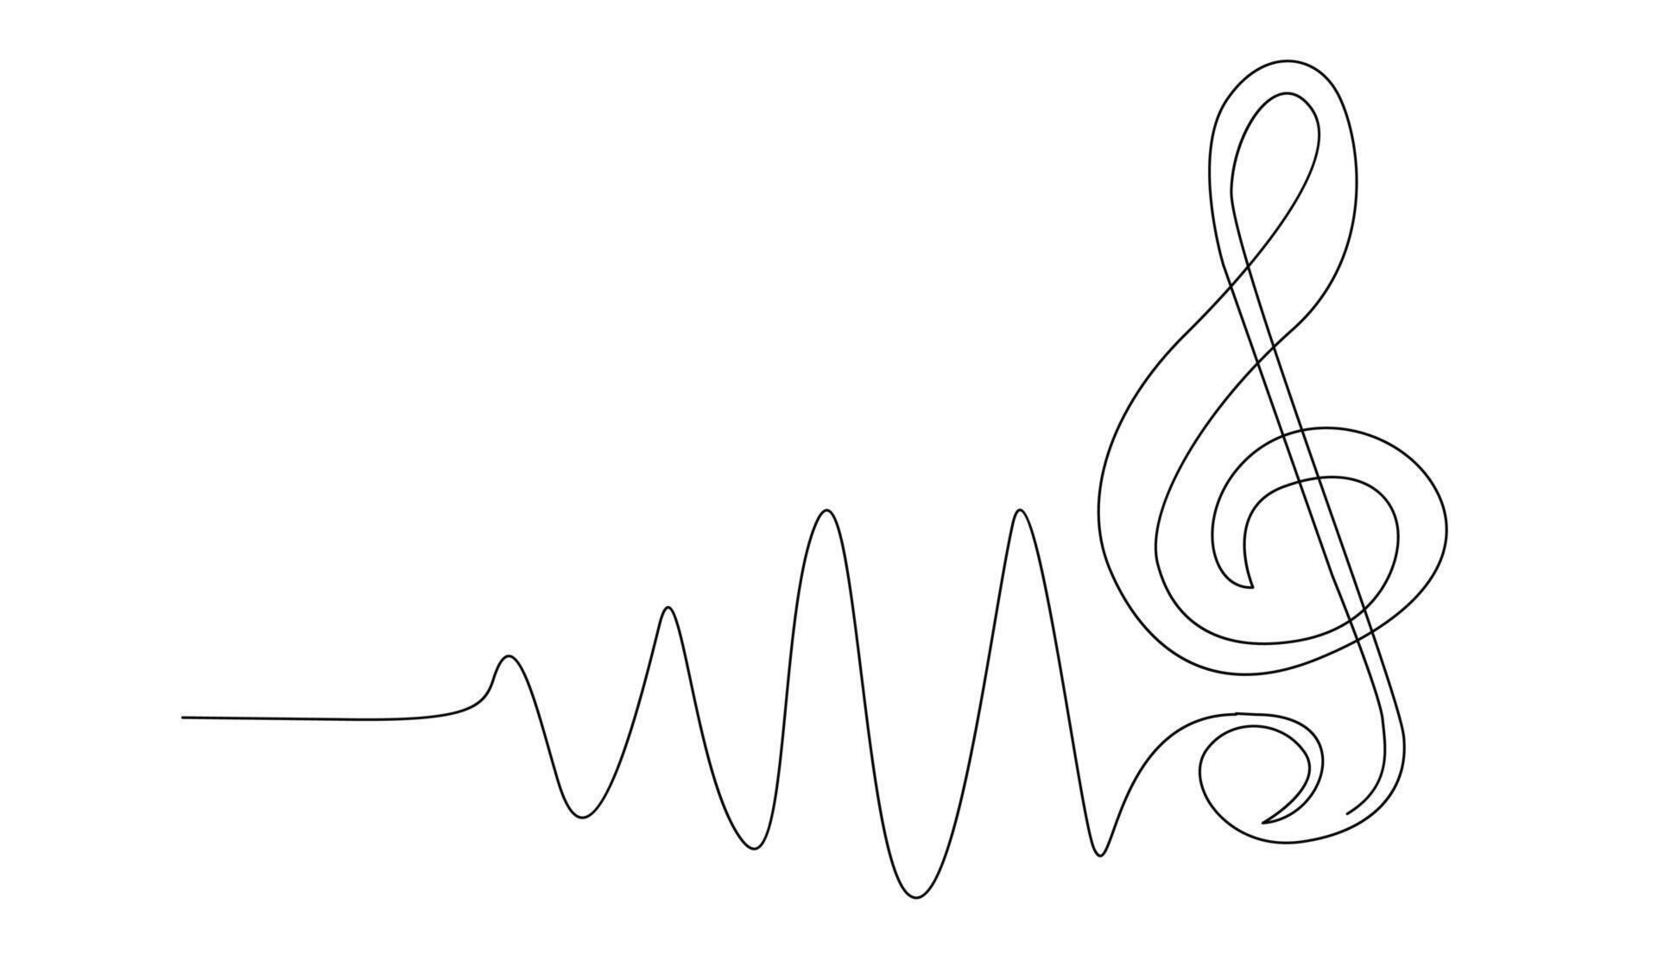 kontinuerlig enda linje teckning av musik anteckningar vektor